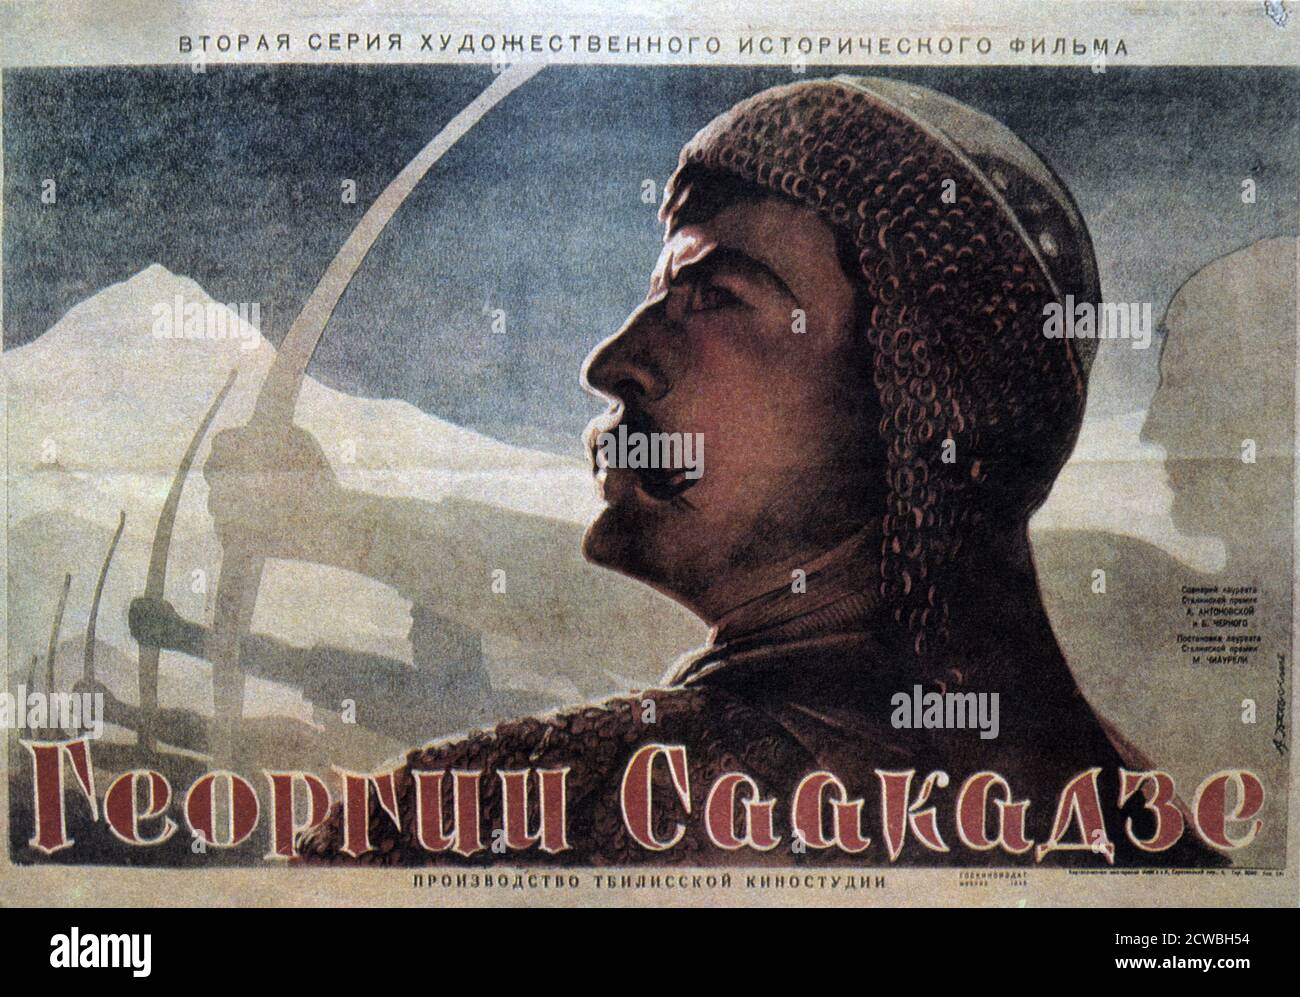 Filmplakat für den russischen 1943 Film 'Giorgi Saakadze' The Grand Mouravi ' (c. 1570 - 3. Oktober 1629) über einen georgischen Politiker und Militärkommandanten, der eine wichtige, aber widersprüchliche Rolle in der Politik des frühen 17. Jahrhunderts Georgien spielte. Er war auch als Grand Mouravi bekannt Stockfoto